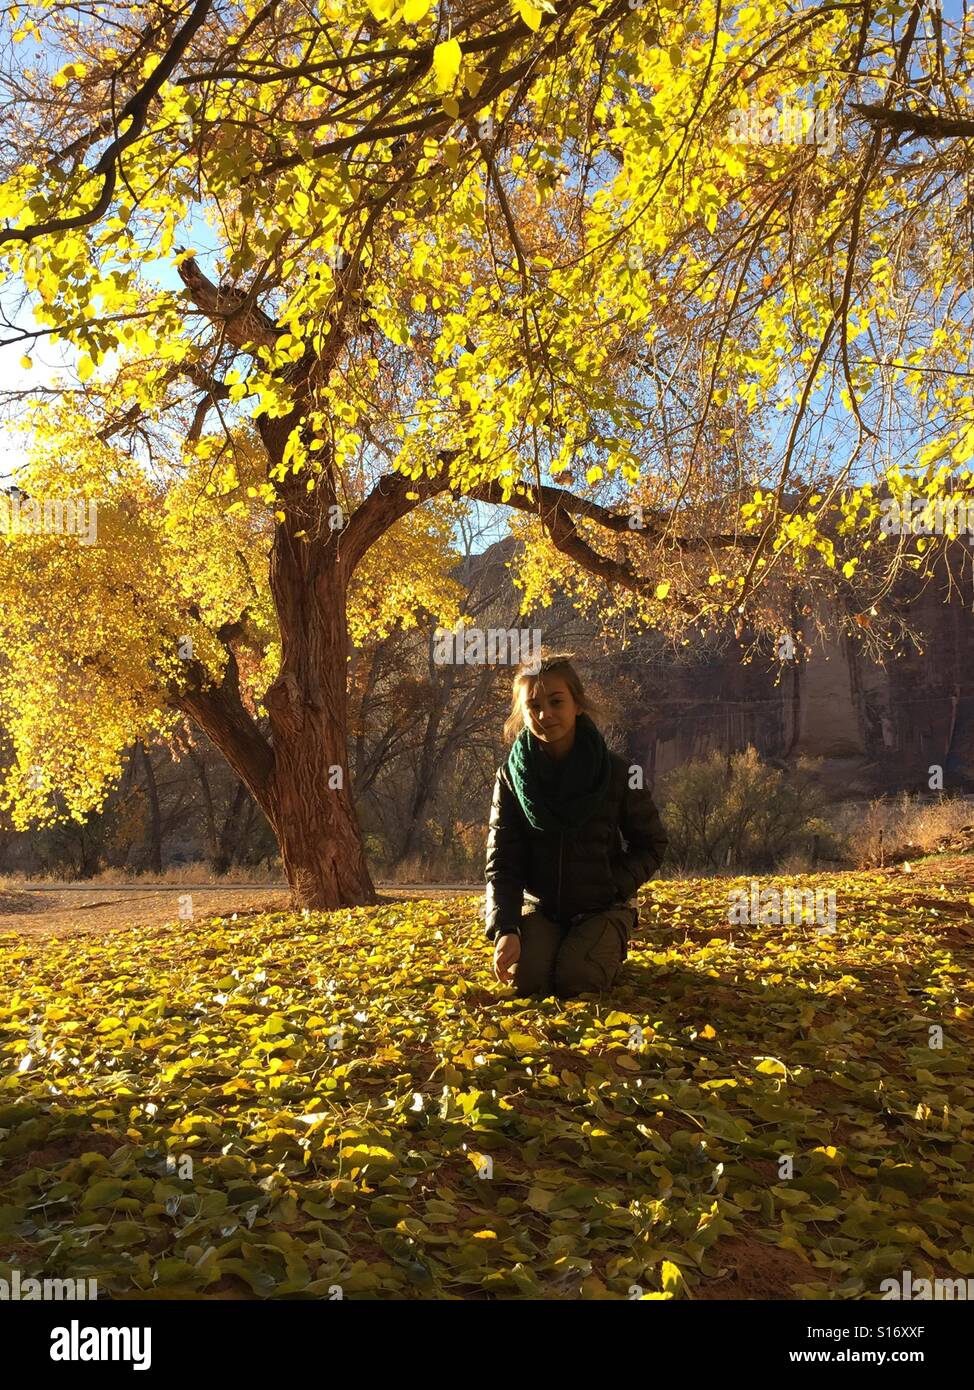 Una giovane ragazza che indossa uno smeraldo infinito sciarpa si siede su una pila di oro e foglie di giallo sotto un albero. Foto Stock